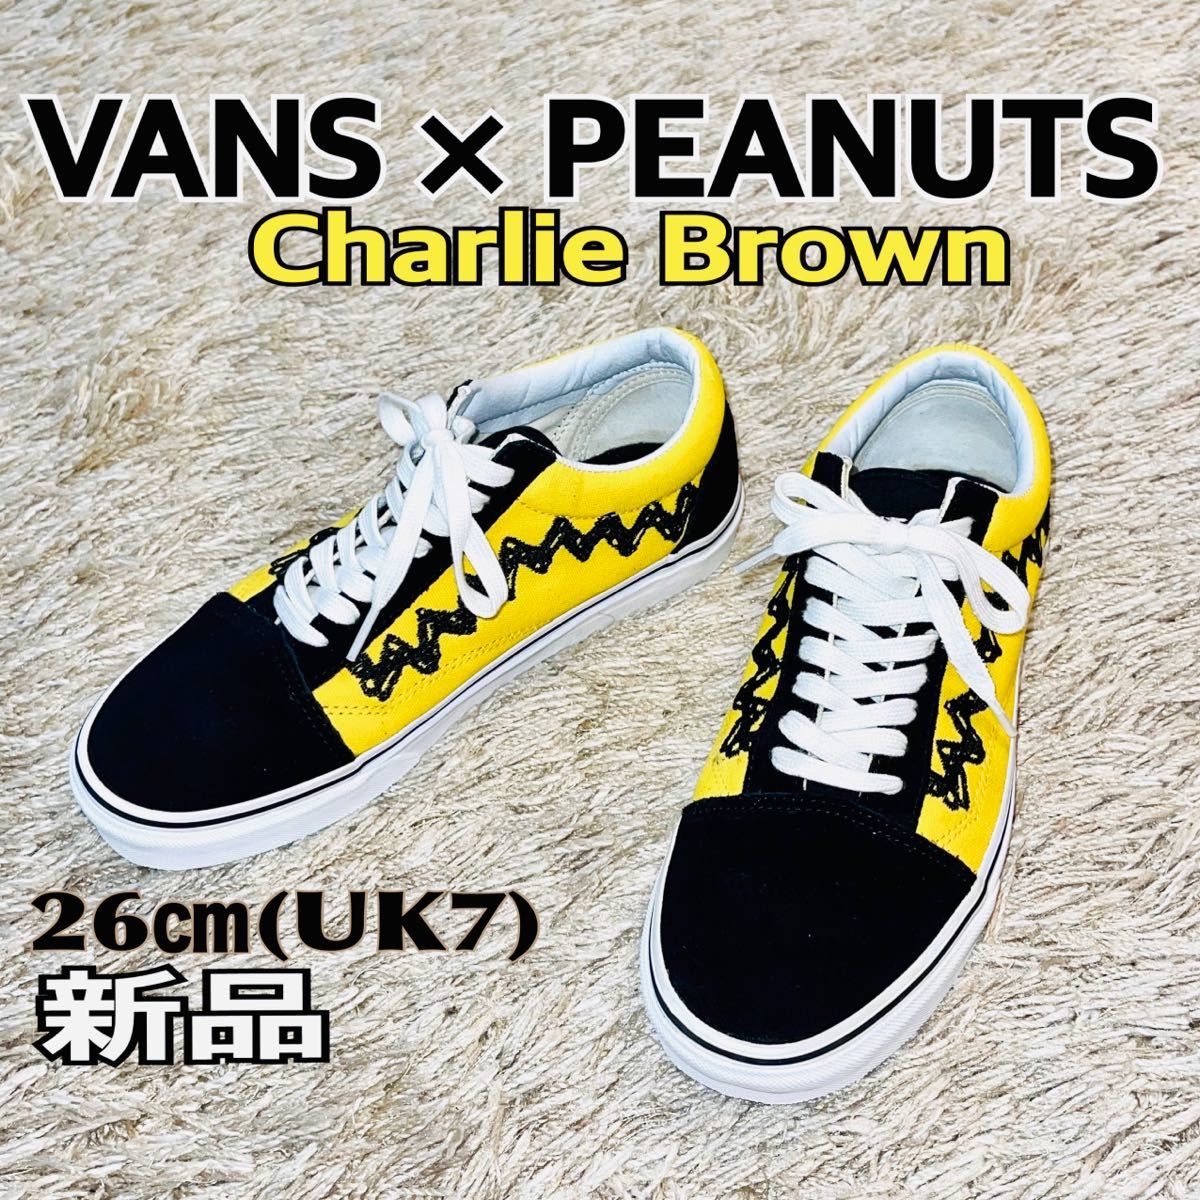 新品 Vans × Peanuts Charlie Brown バンス×チャーリーブラウン 26(UK7) 送料無料